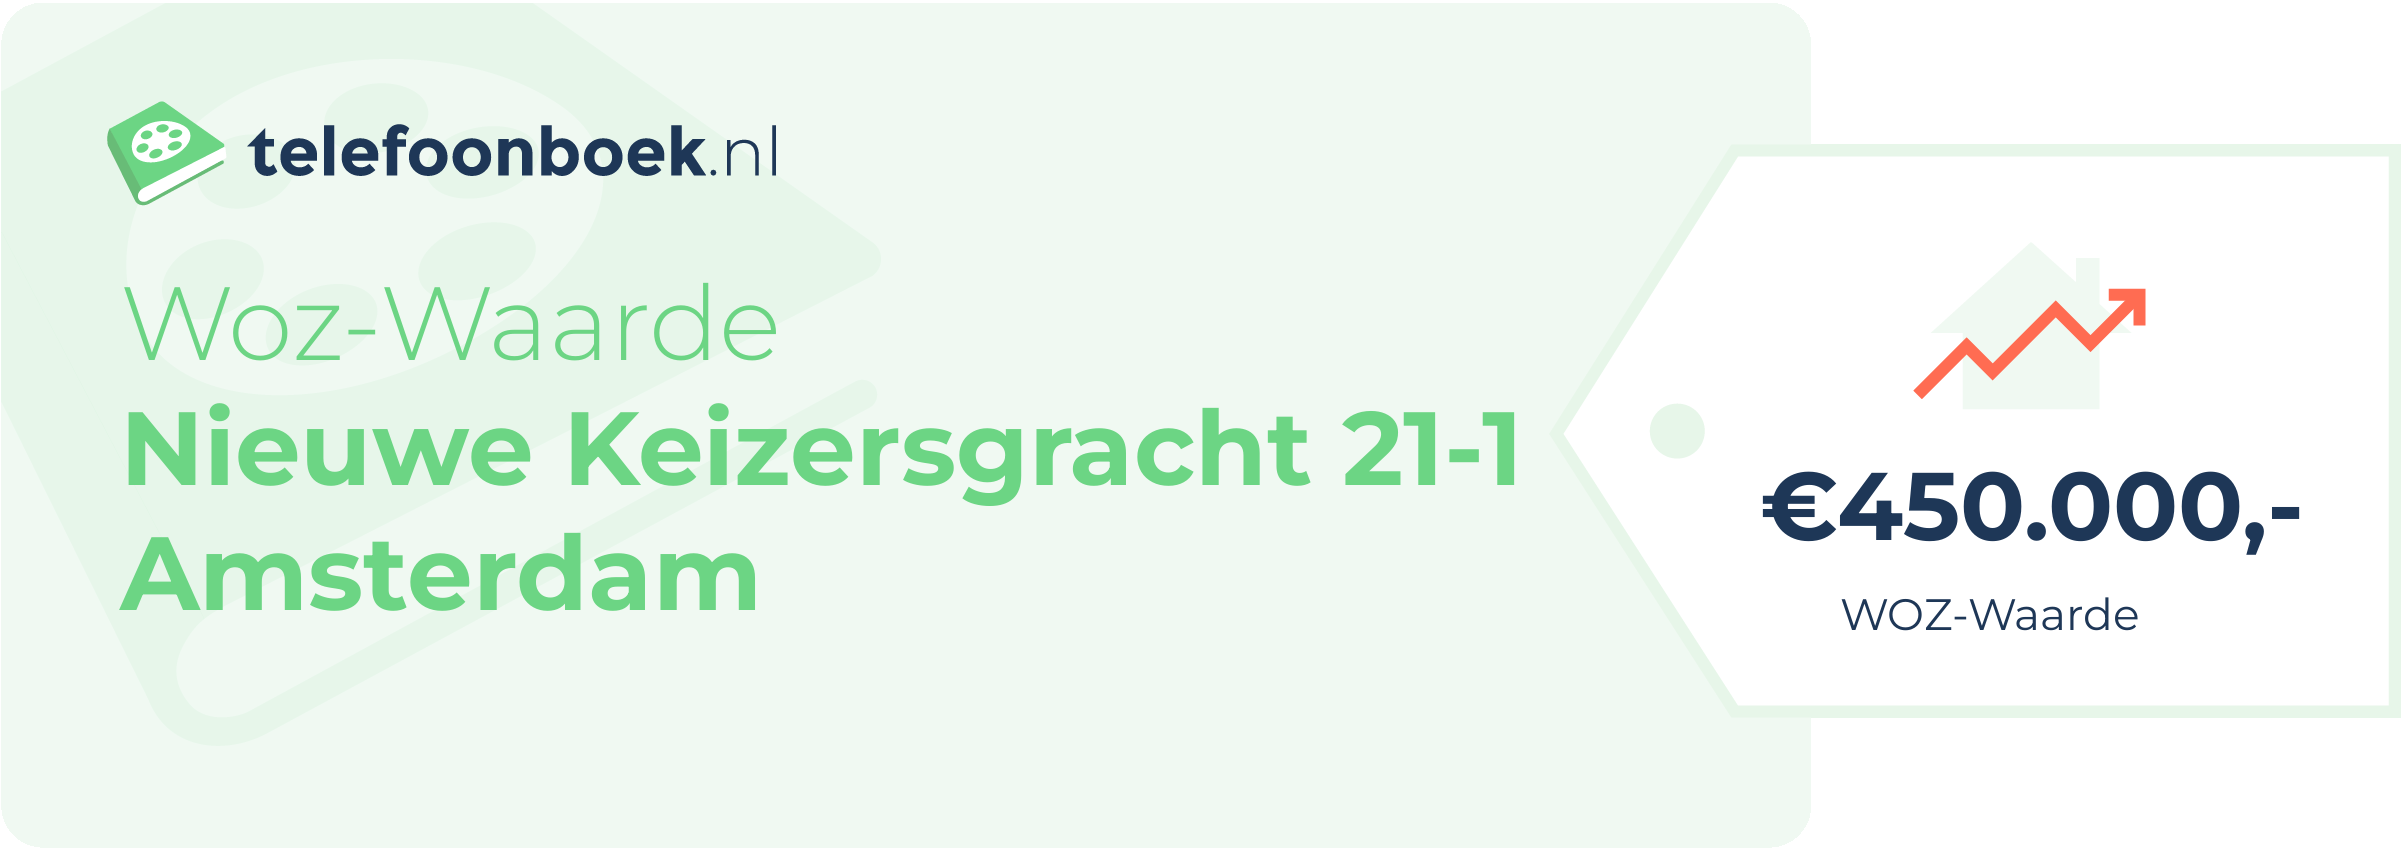 WOZ-waarde Nieuwe Keizersgracht 21-1 Amsterdam